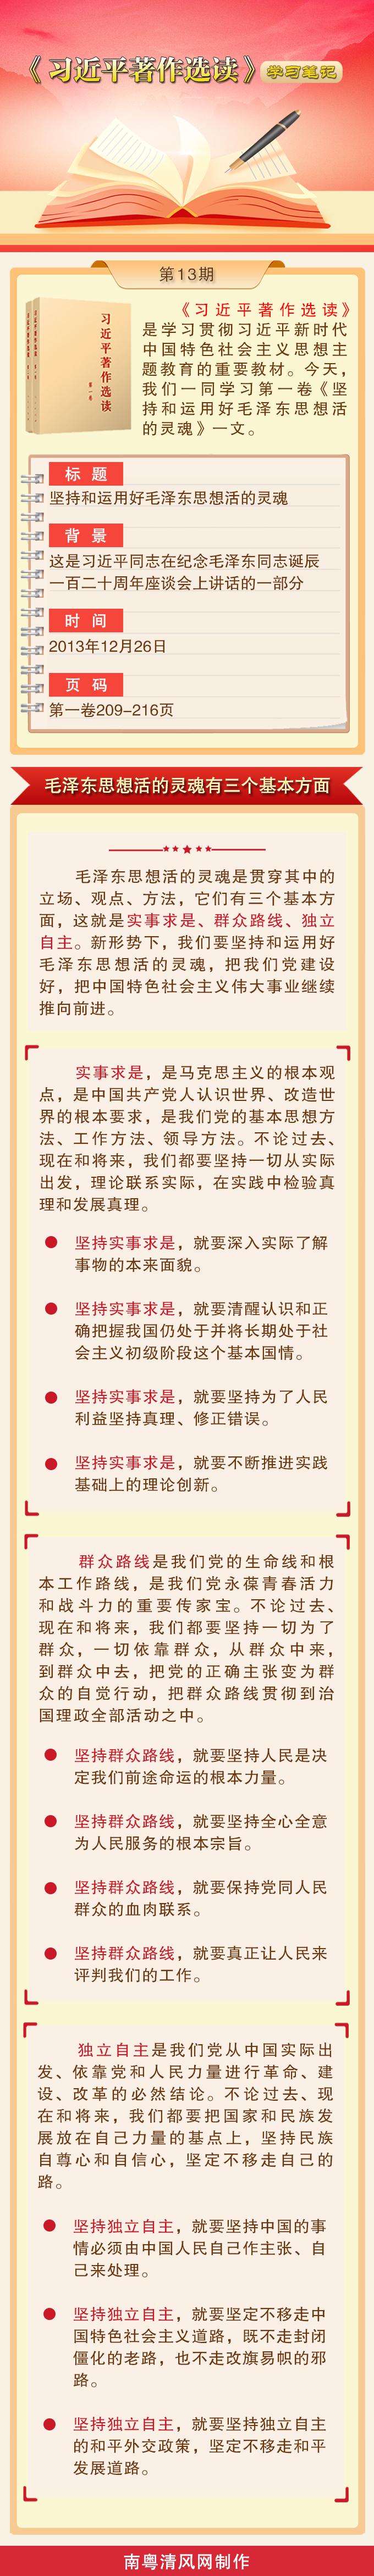 《习近平著作选读》学习笔记：毛泽东思想活的灵魂有三个基本方面.png